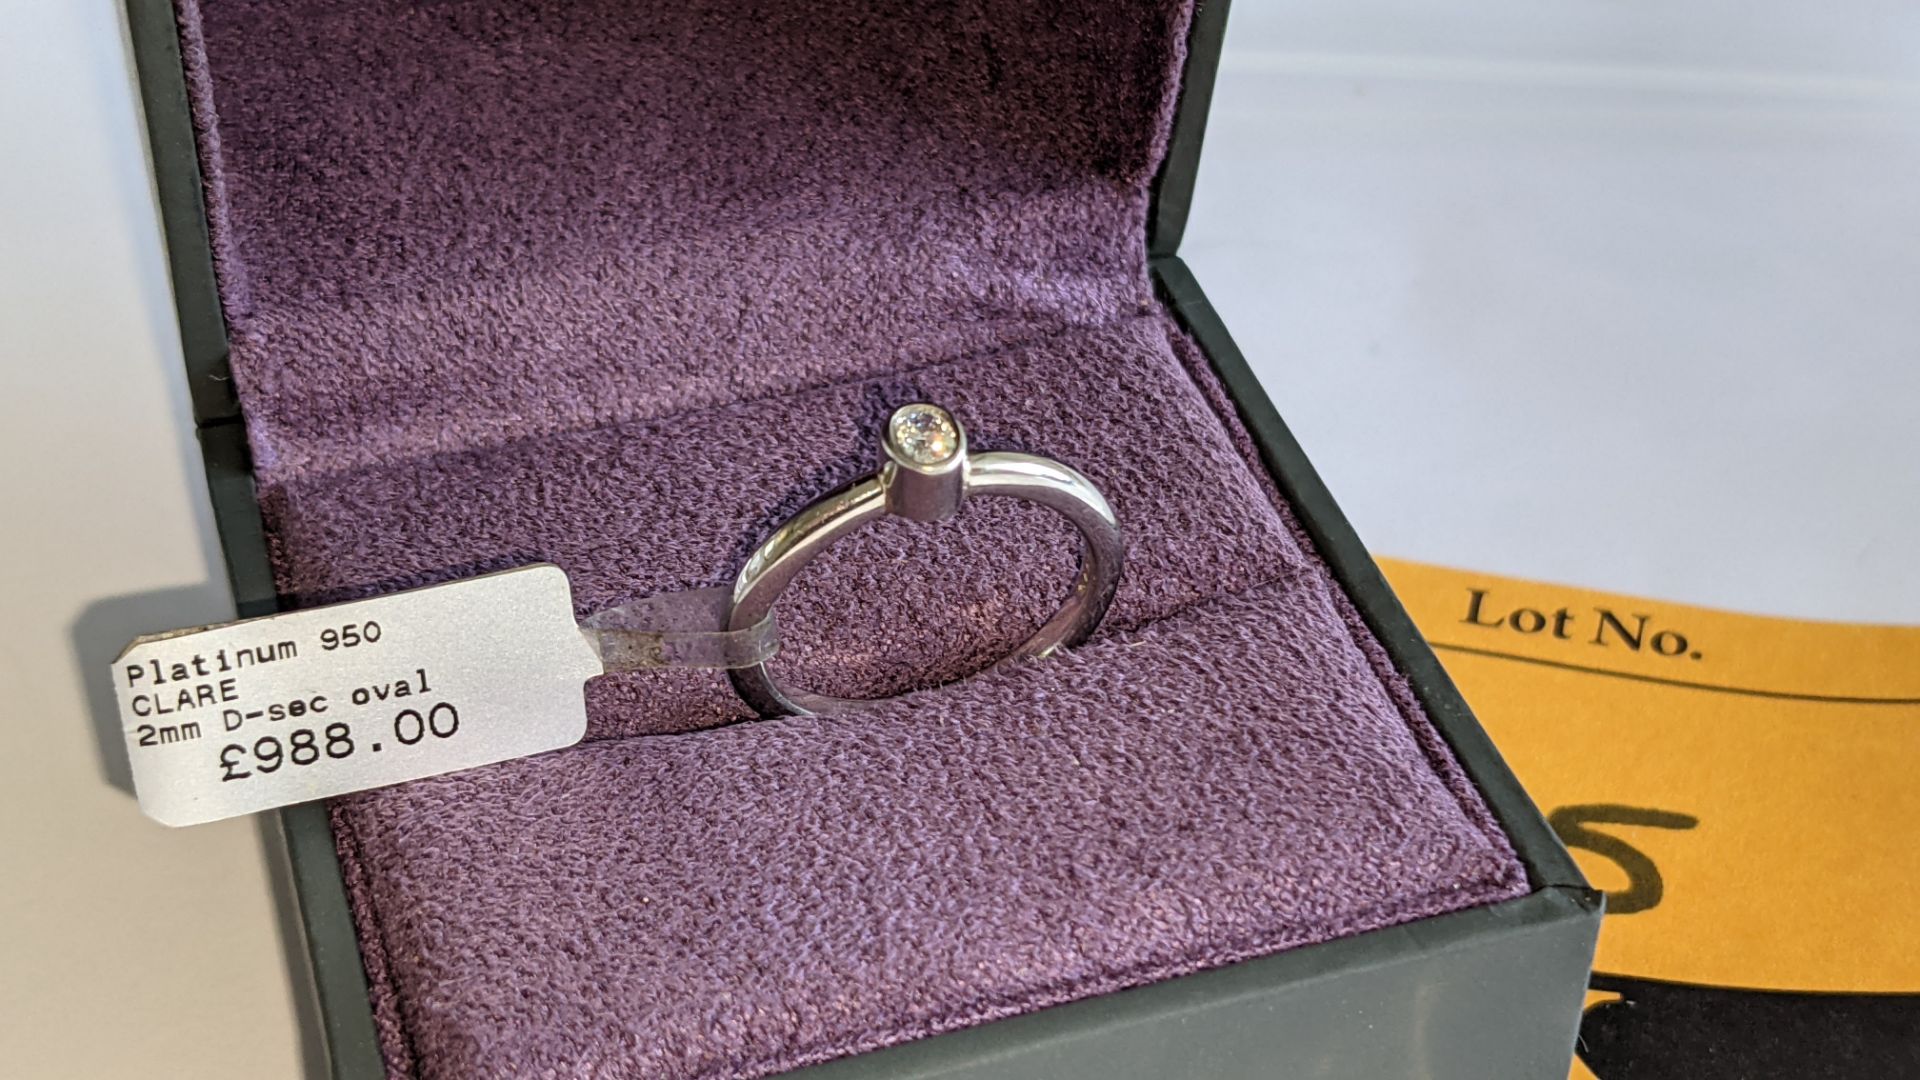 Platinum 950 & diamond ring with 0.15ct oval diamond RRP £988 - Image 3 of 14